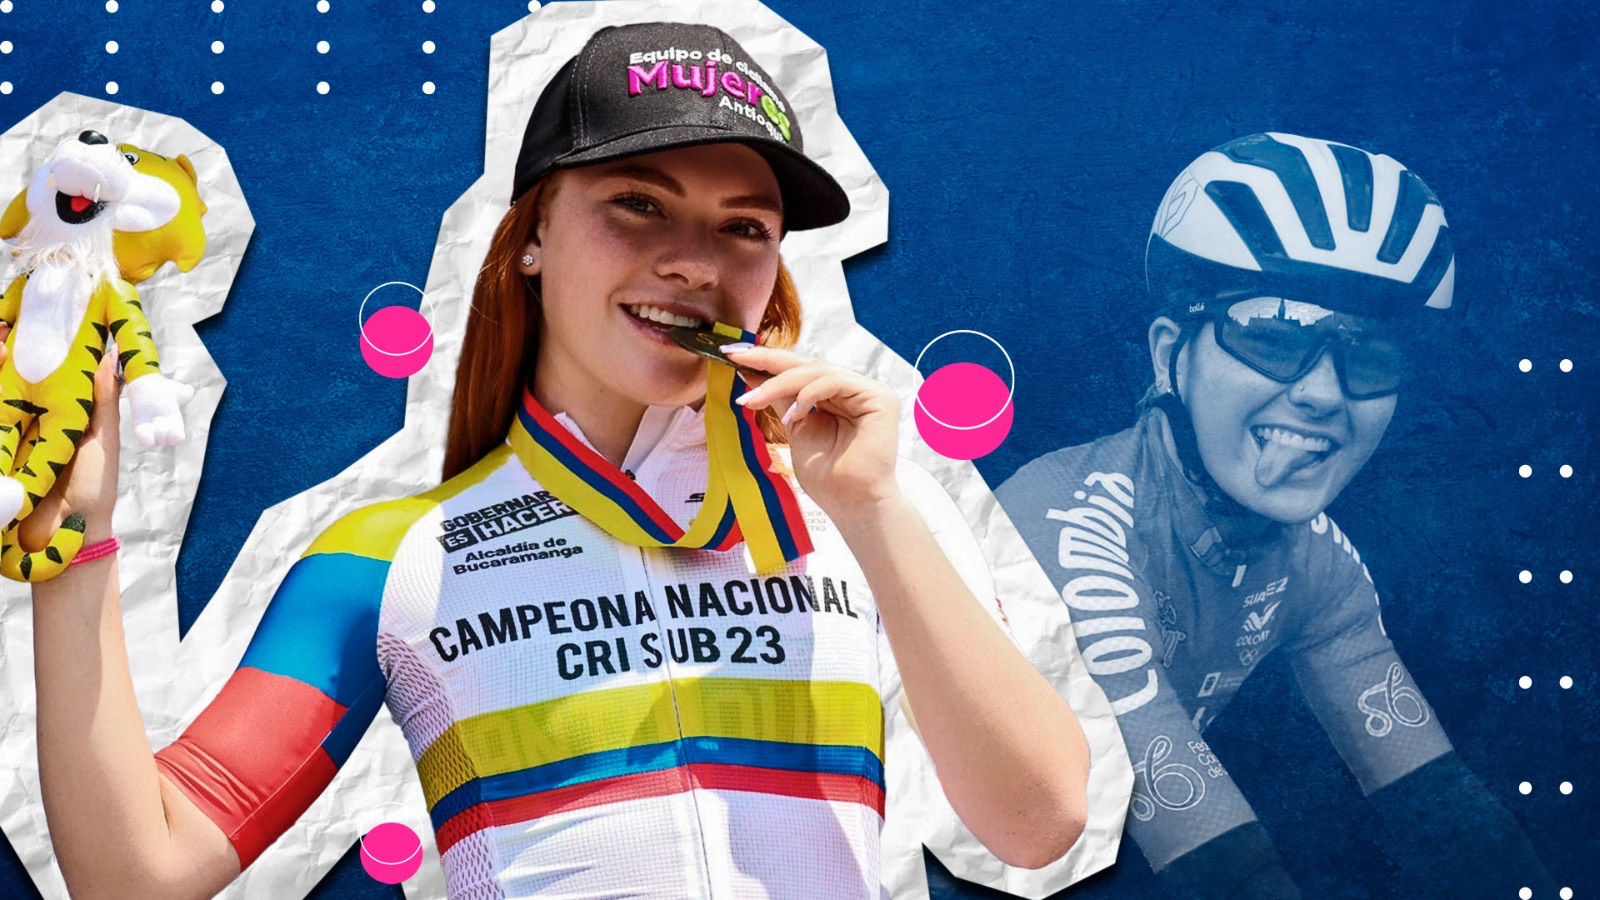 La ciclista se convirtió en campeona nacional de contrarreloj sub-23. Infobae- 
Jesús Abraham Aviles Ortiz